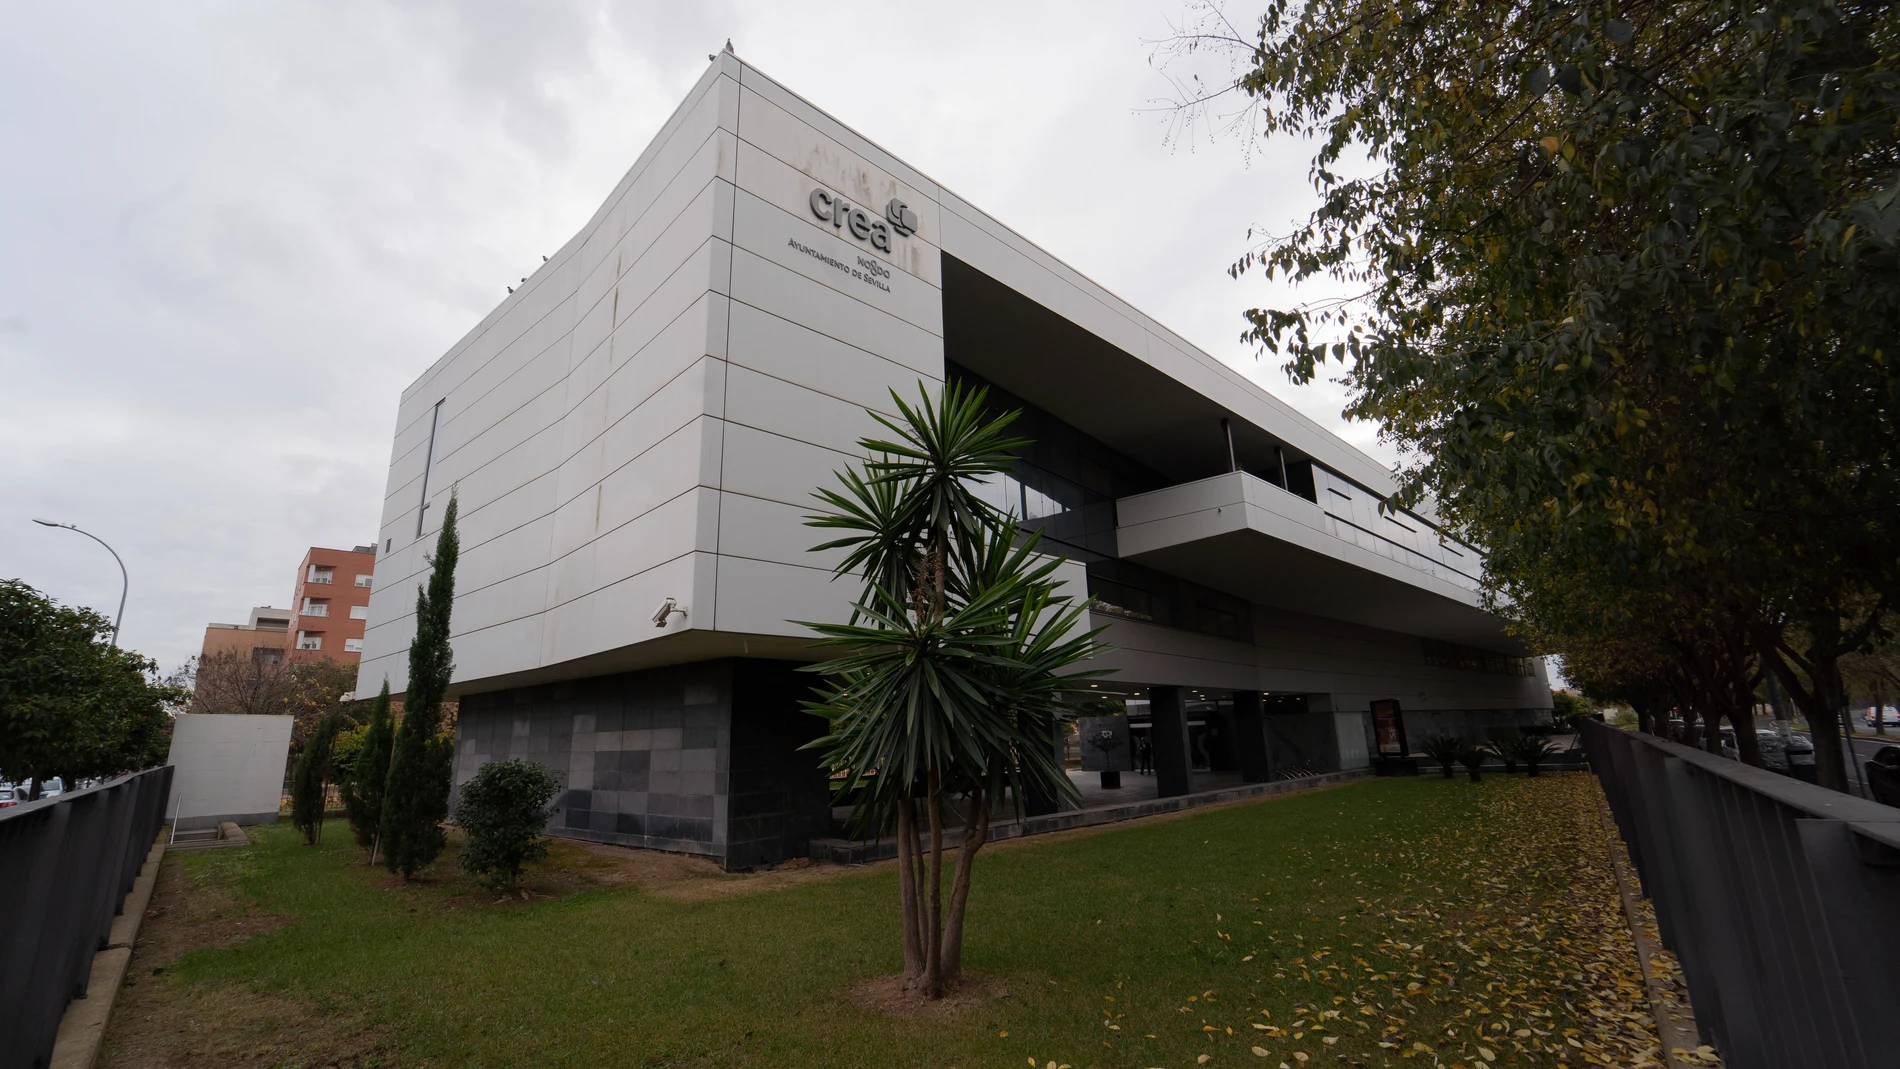 Edificio CREA del Ayuntamiento de Sevilla, donde se ubicará la Agencia Espacial Española